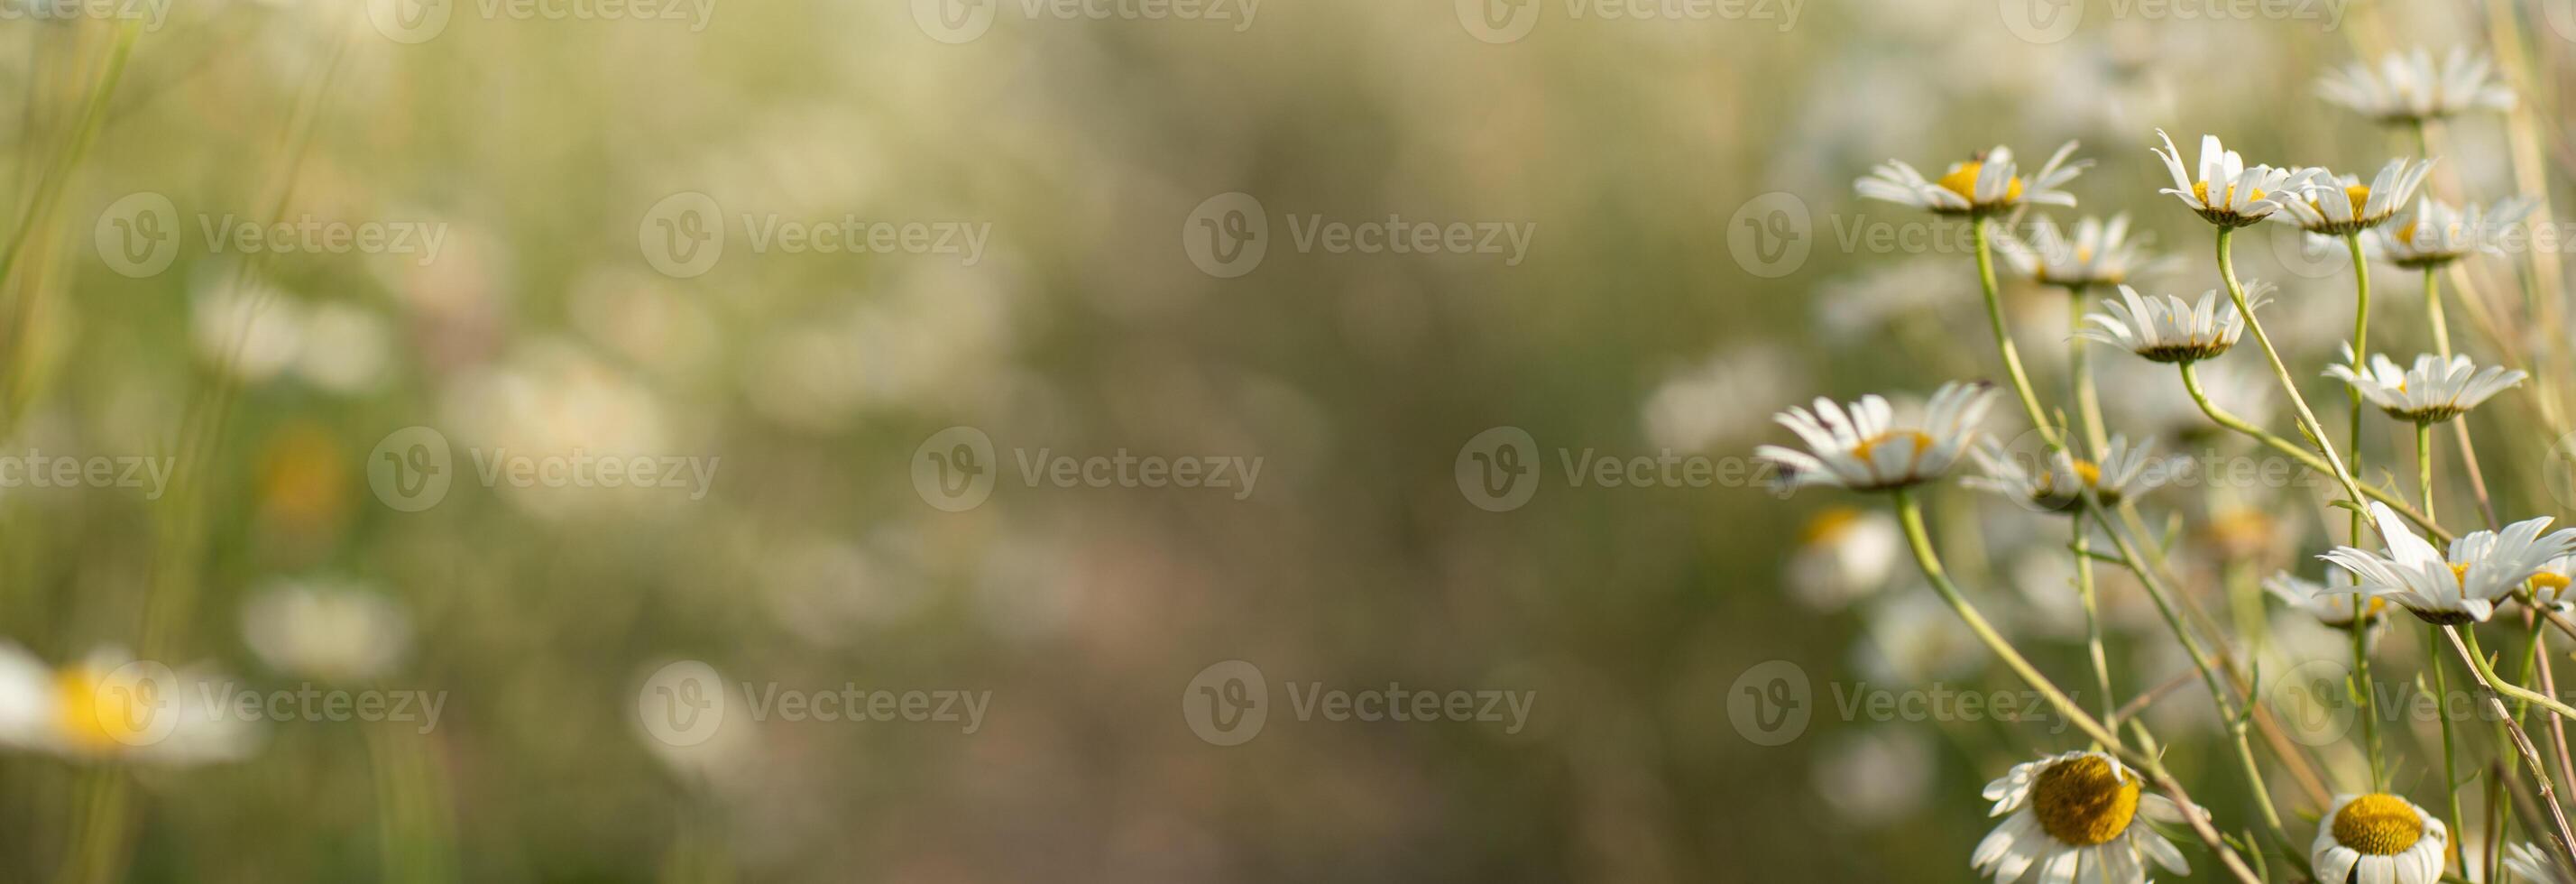 Gänseblümchen Kamille Hintergrund. schön Natur Szene mit Blühen Kamille im Sonne aufflackern. sonnig Tag. Sommer- Blumen. foto